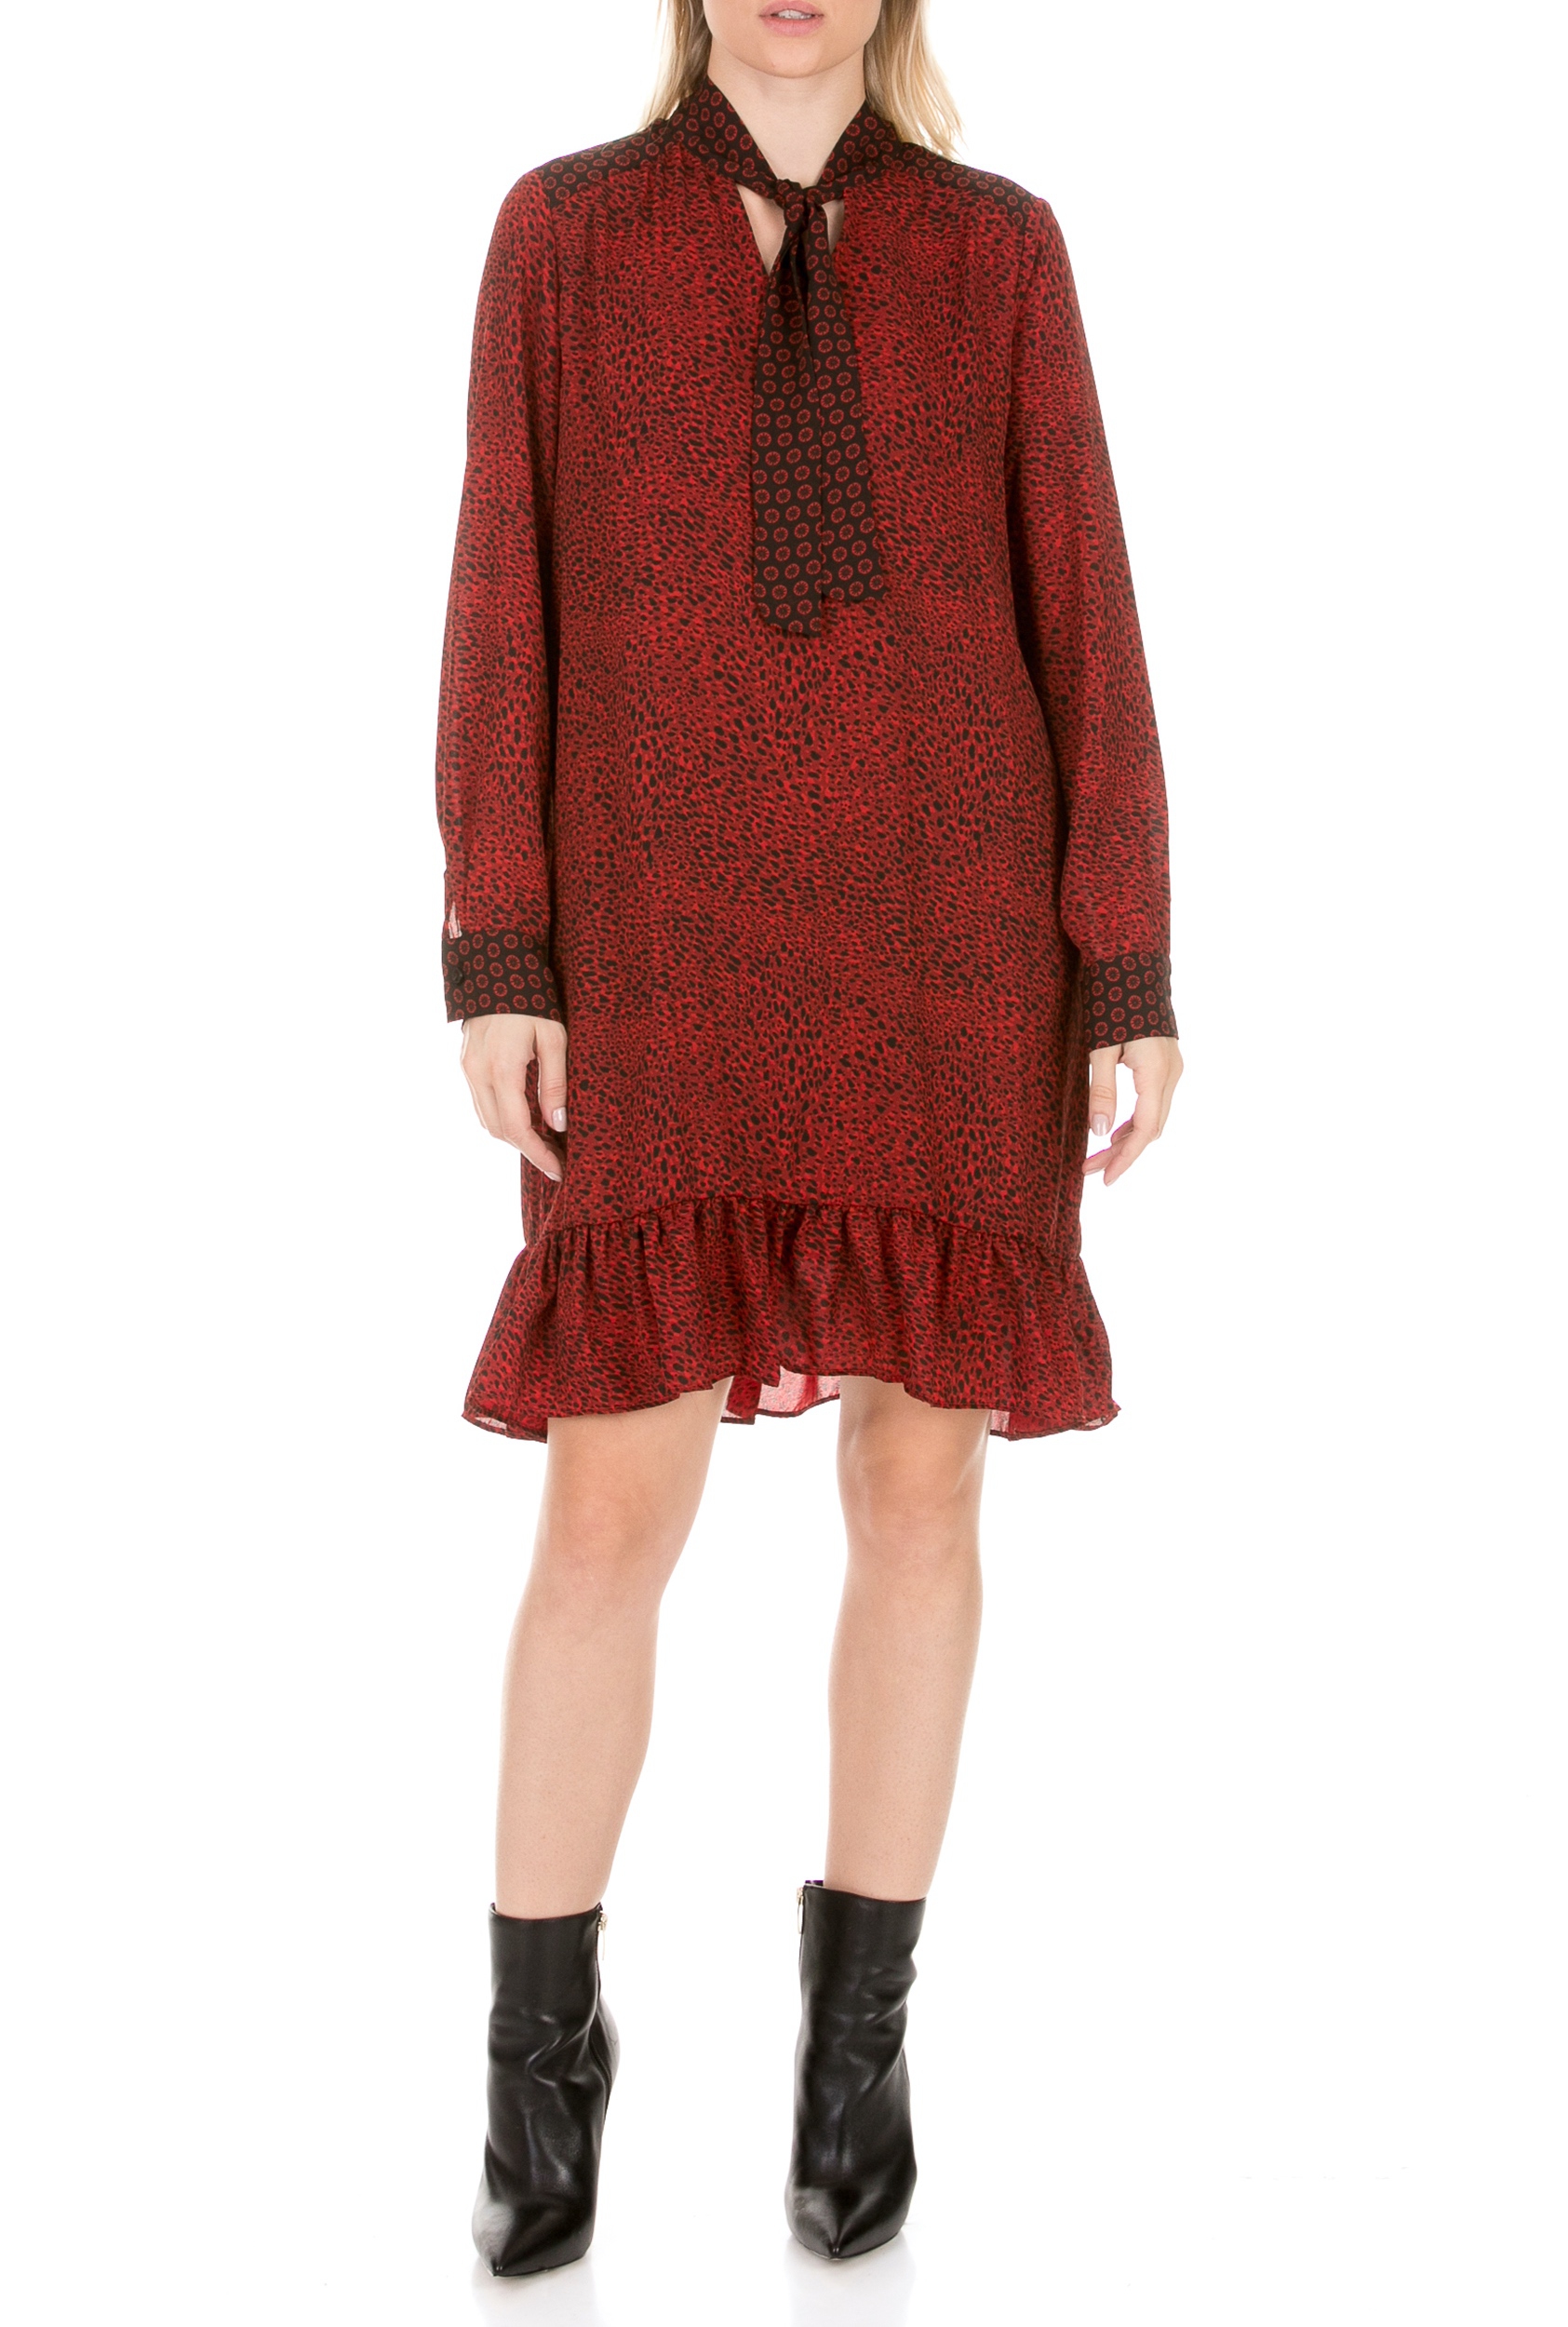 Γυναικεία/Ρούχα/Φορέματα/Μίνι LA DOLLS - Γυναικείο mini φόρεμα LA DOLLS TWO PRINTS κόκκινο μαύρο